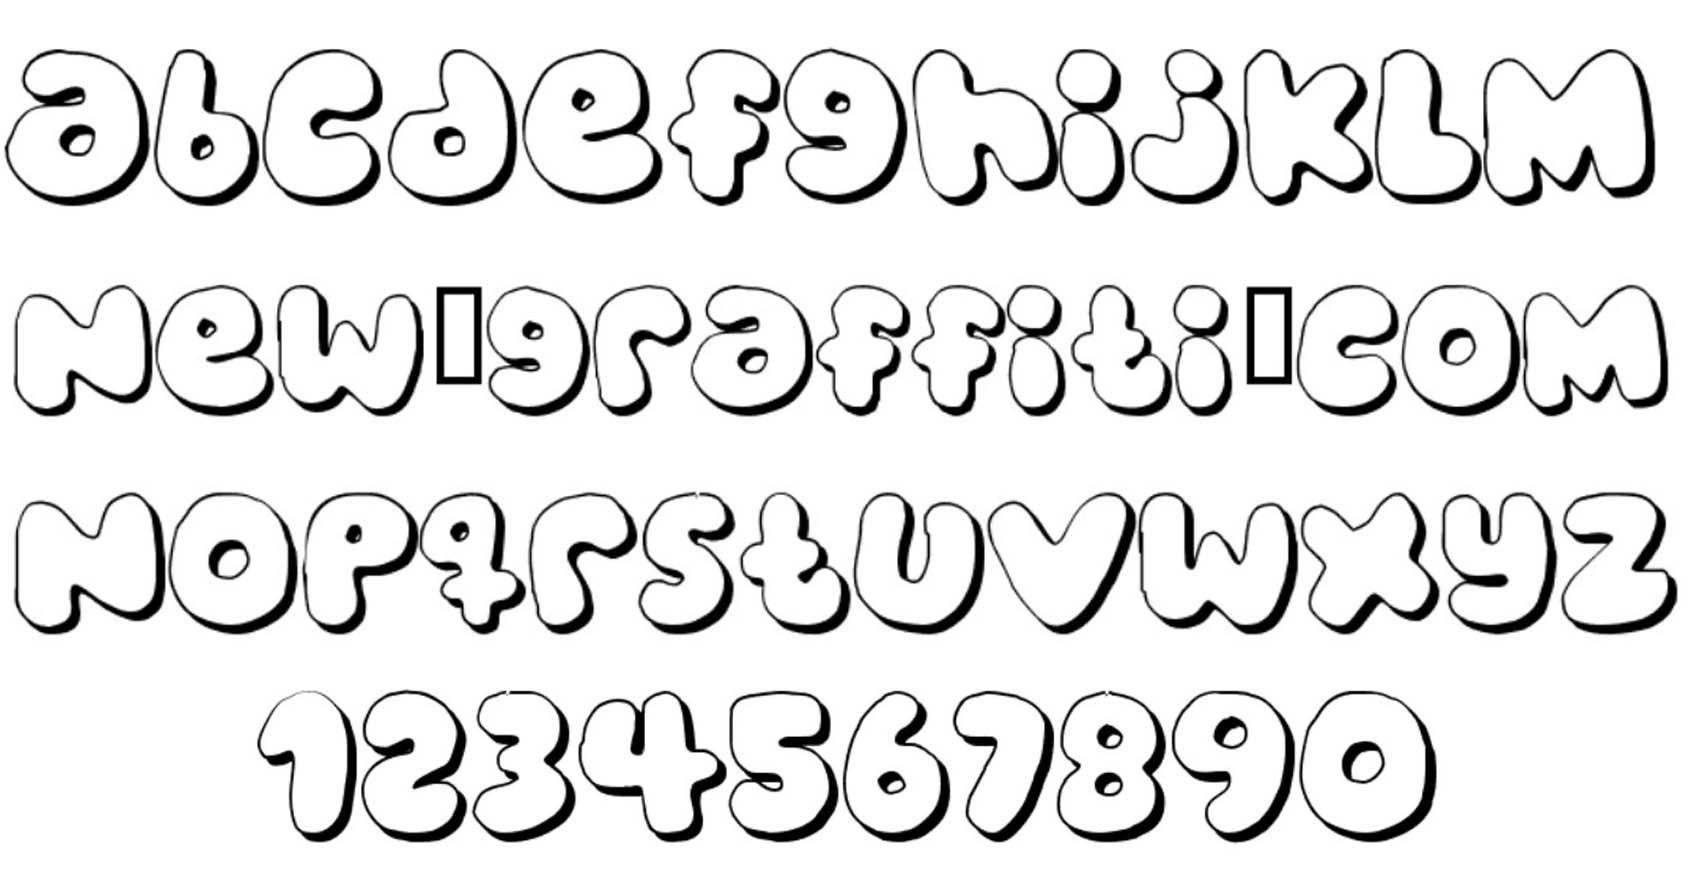 Free Bubble Letter Font Best S Of Bubble Letter Font Bubble Letter Font